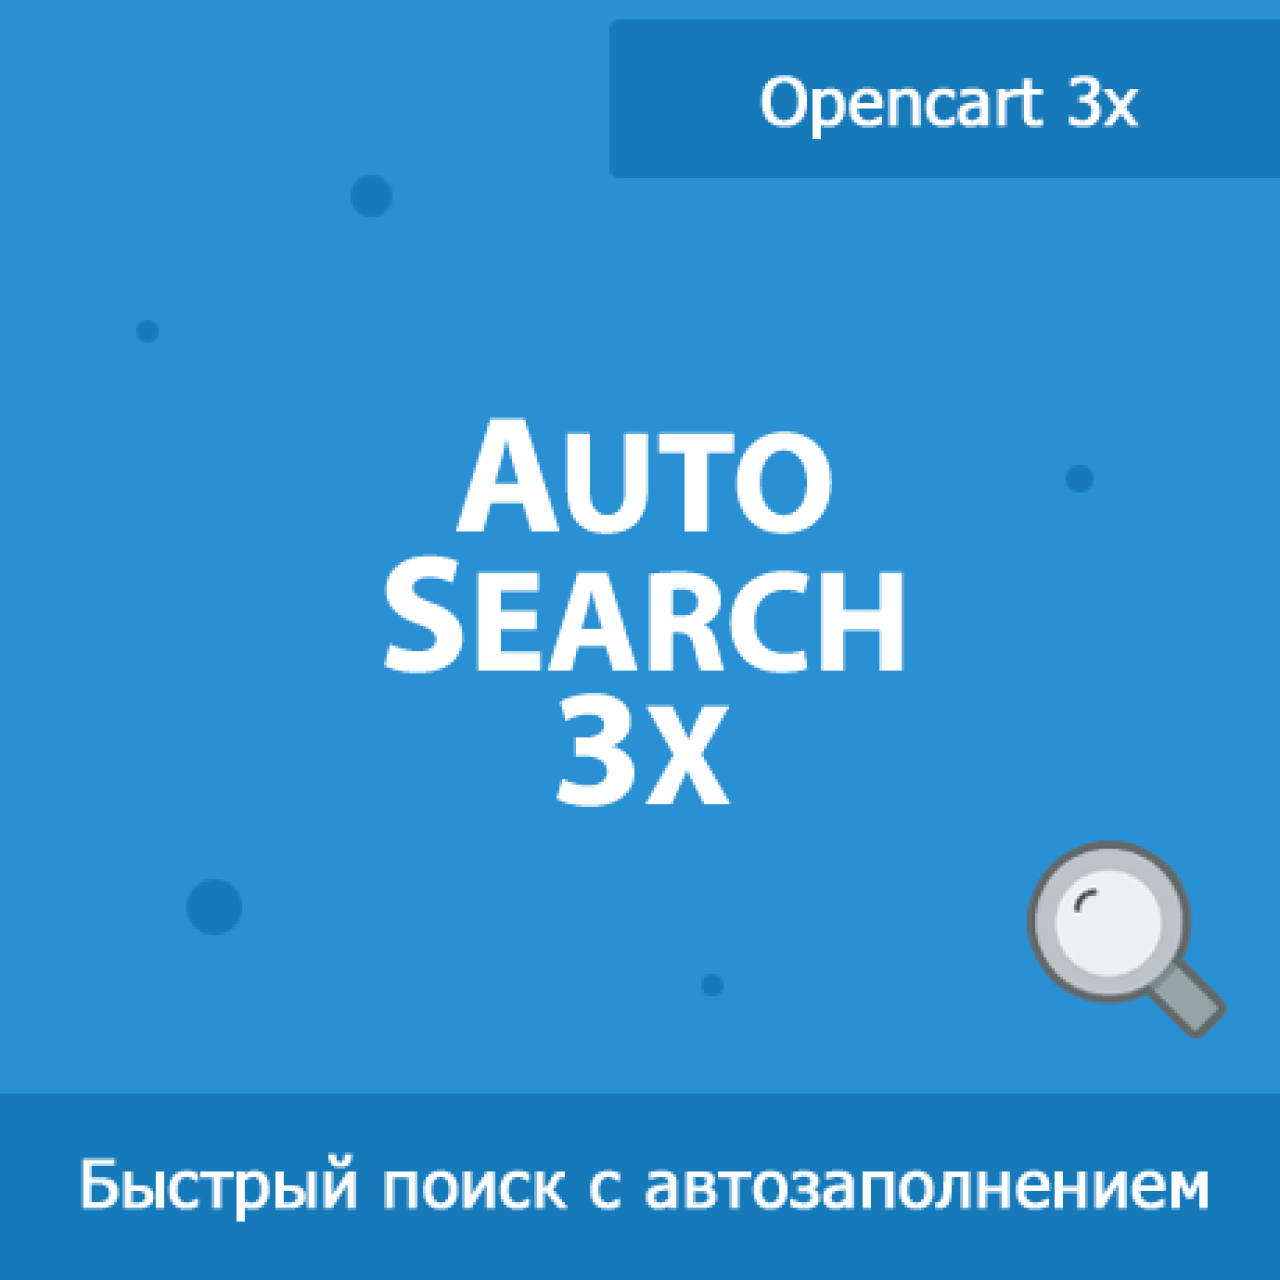 AutoSearch 3x - быстрый поиск для Opencart 3 из категории Поиск для CMS OpenCart (ОпенКарт)